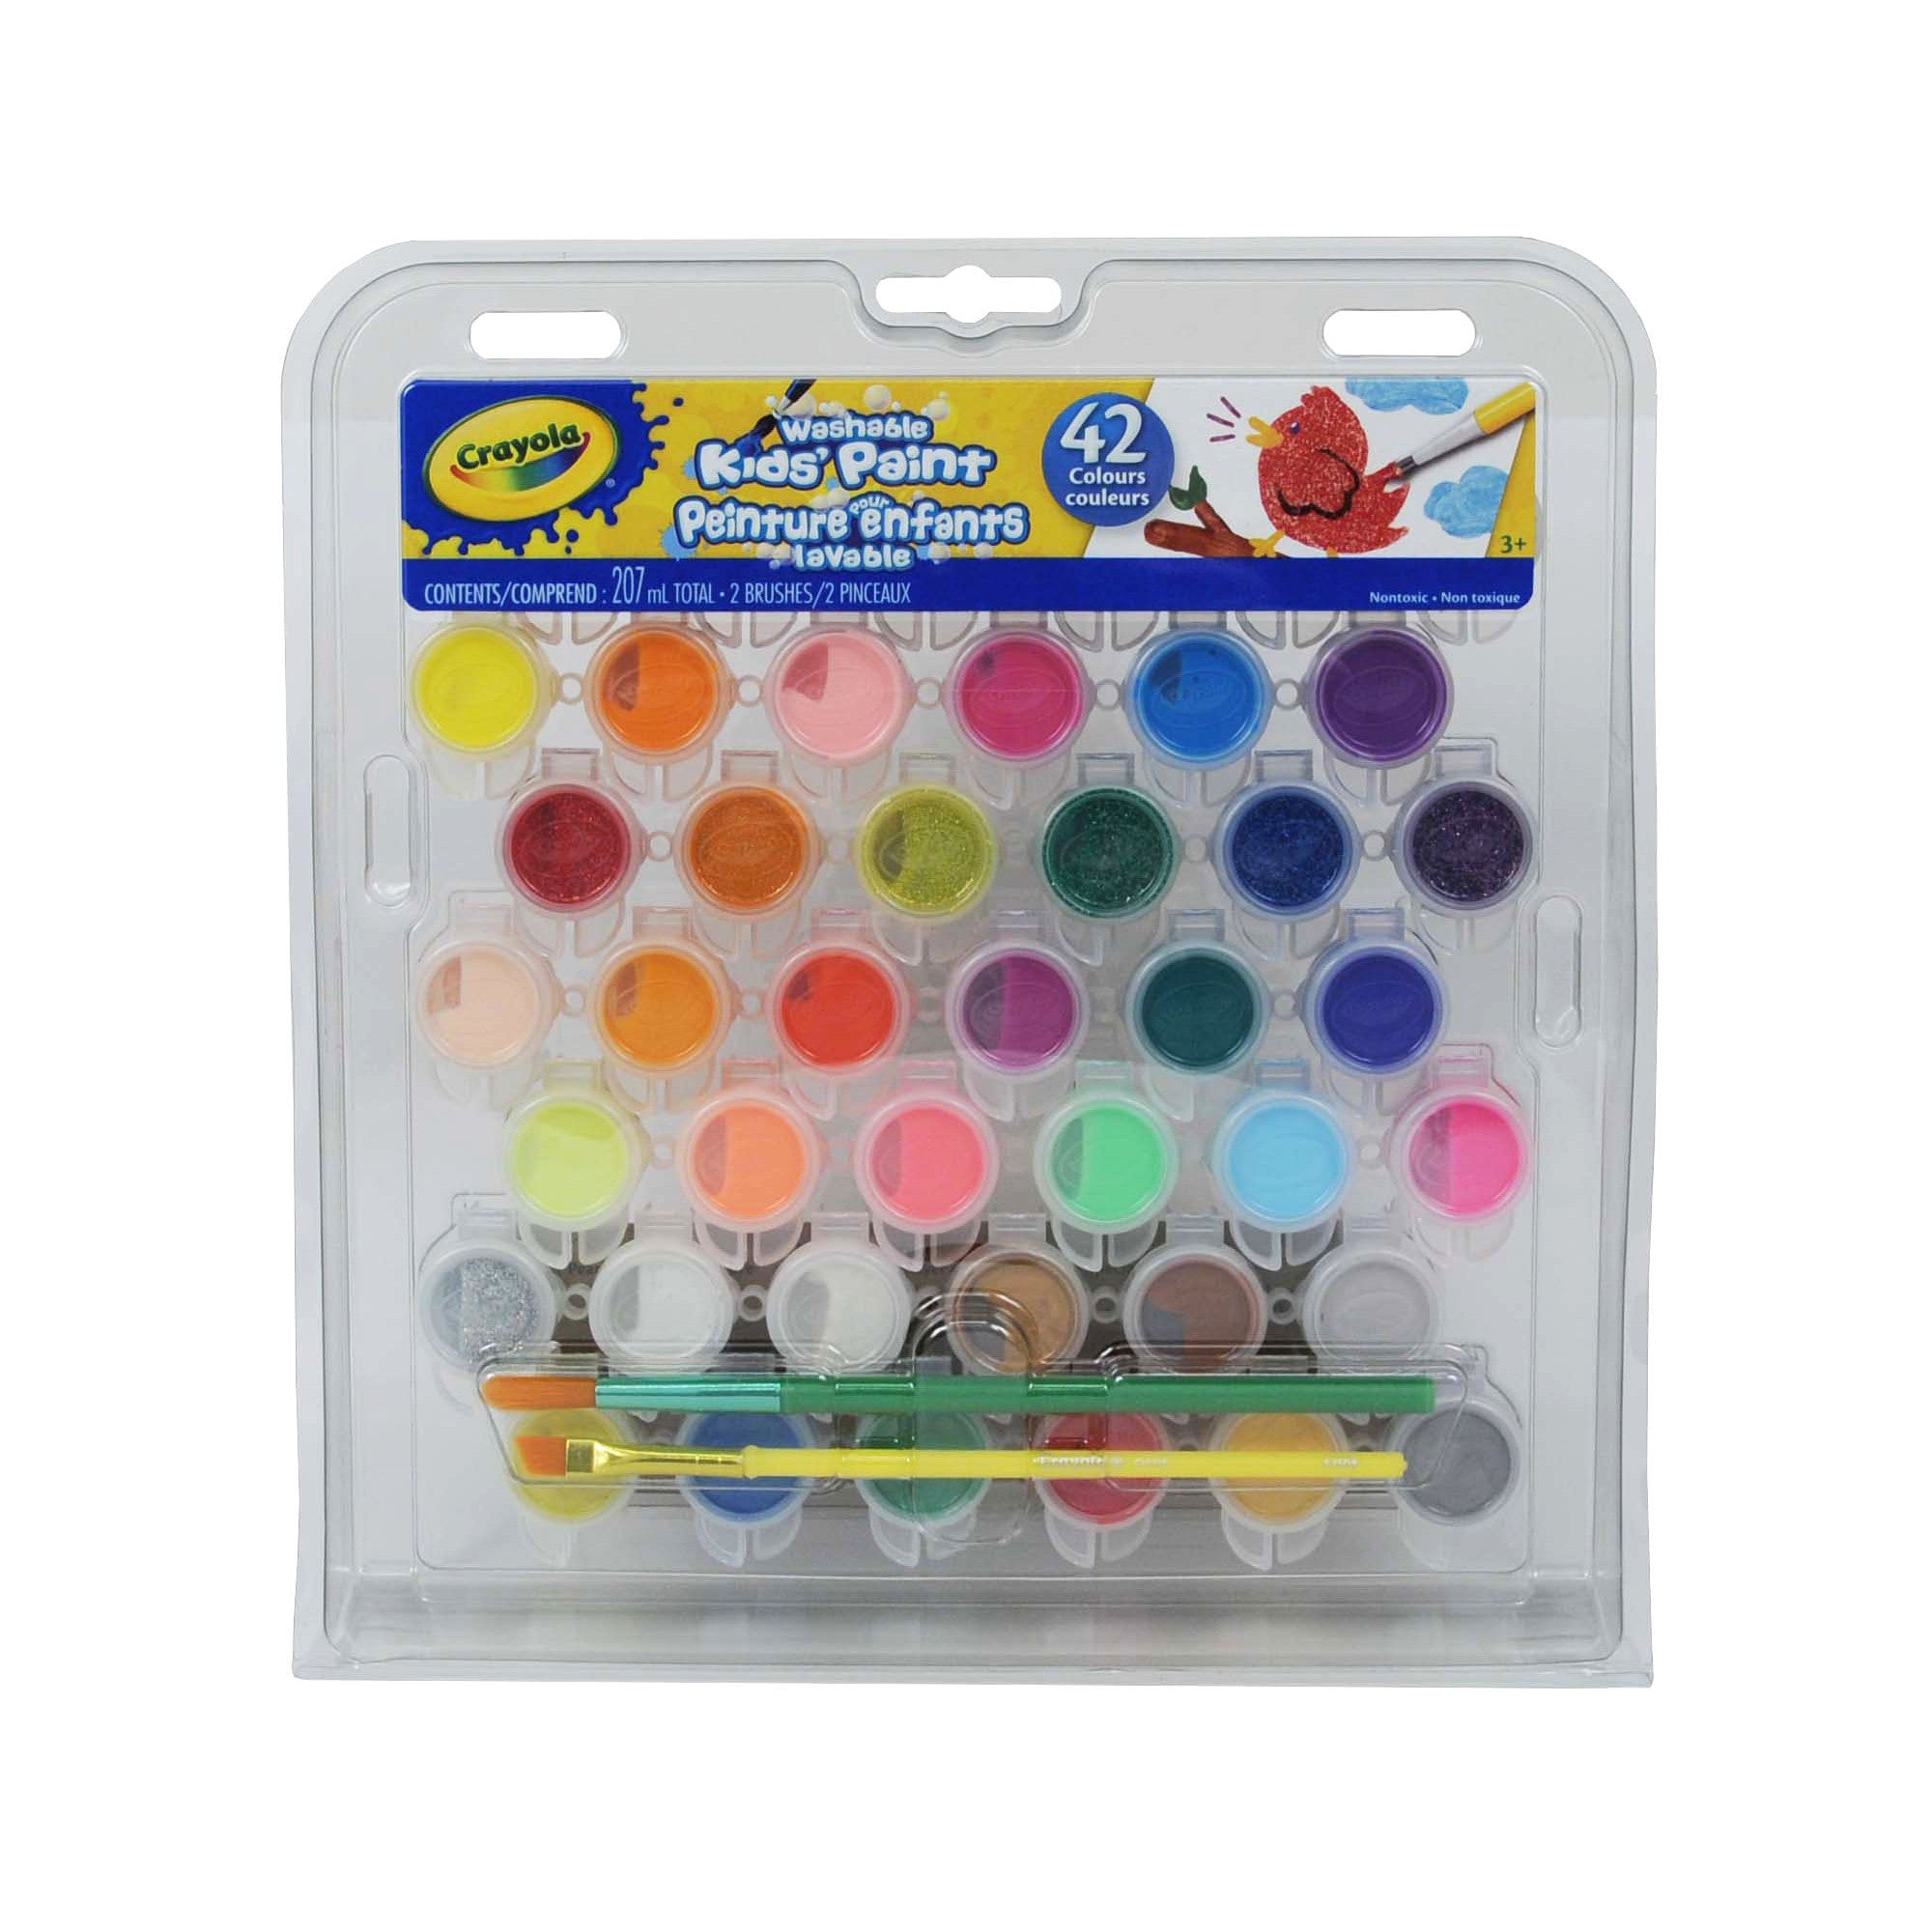 Crayons stylos d'encre d'archival ens. couleur (6) no.005 Pigma